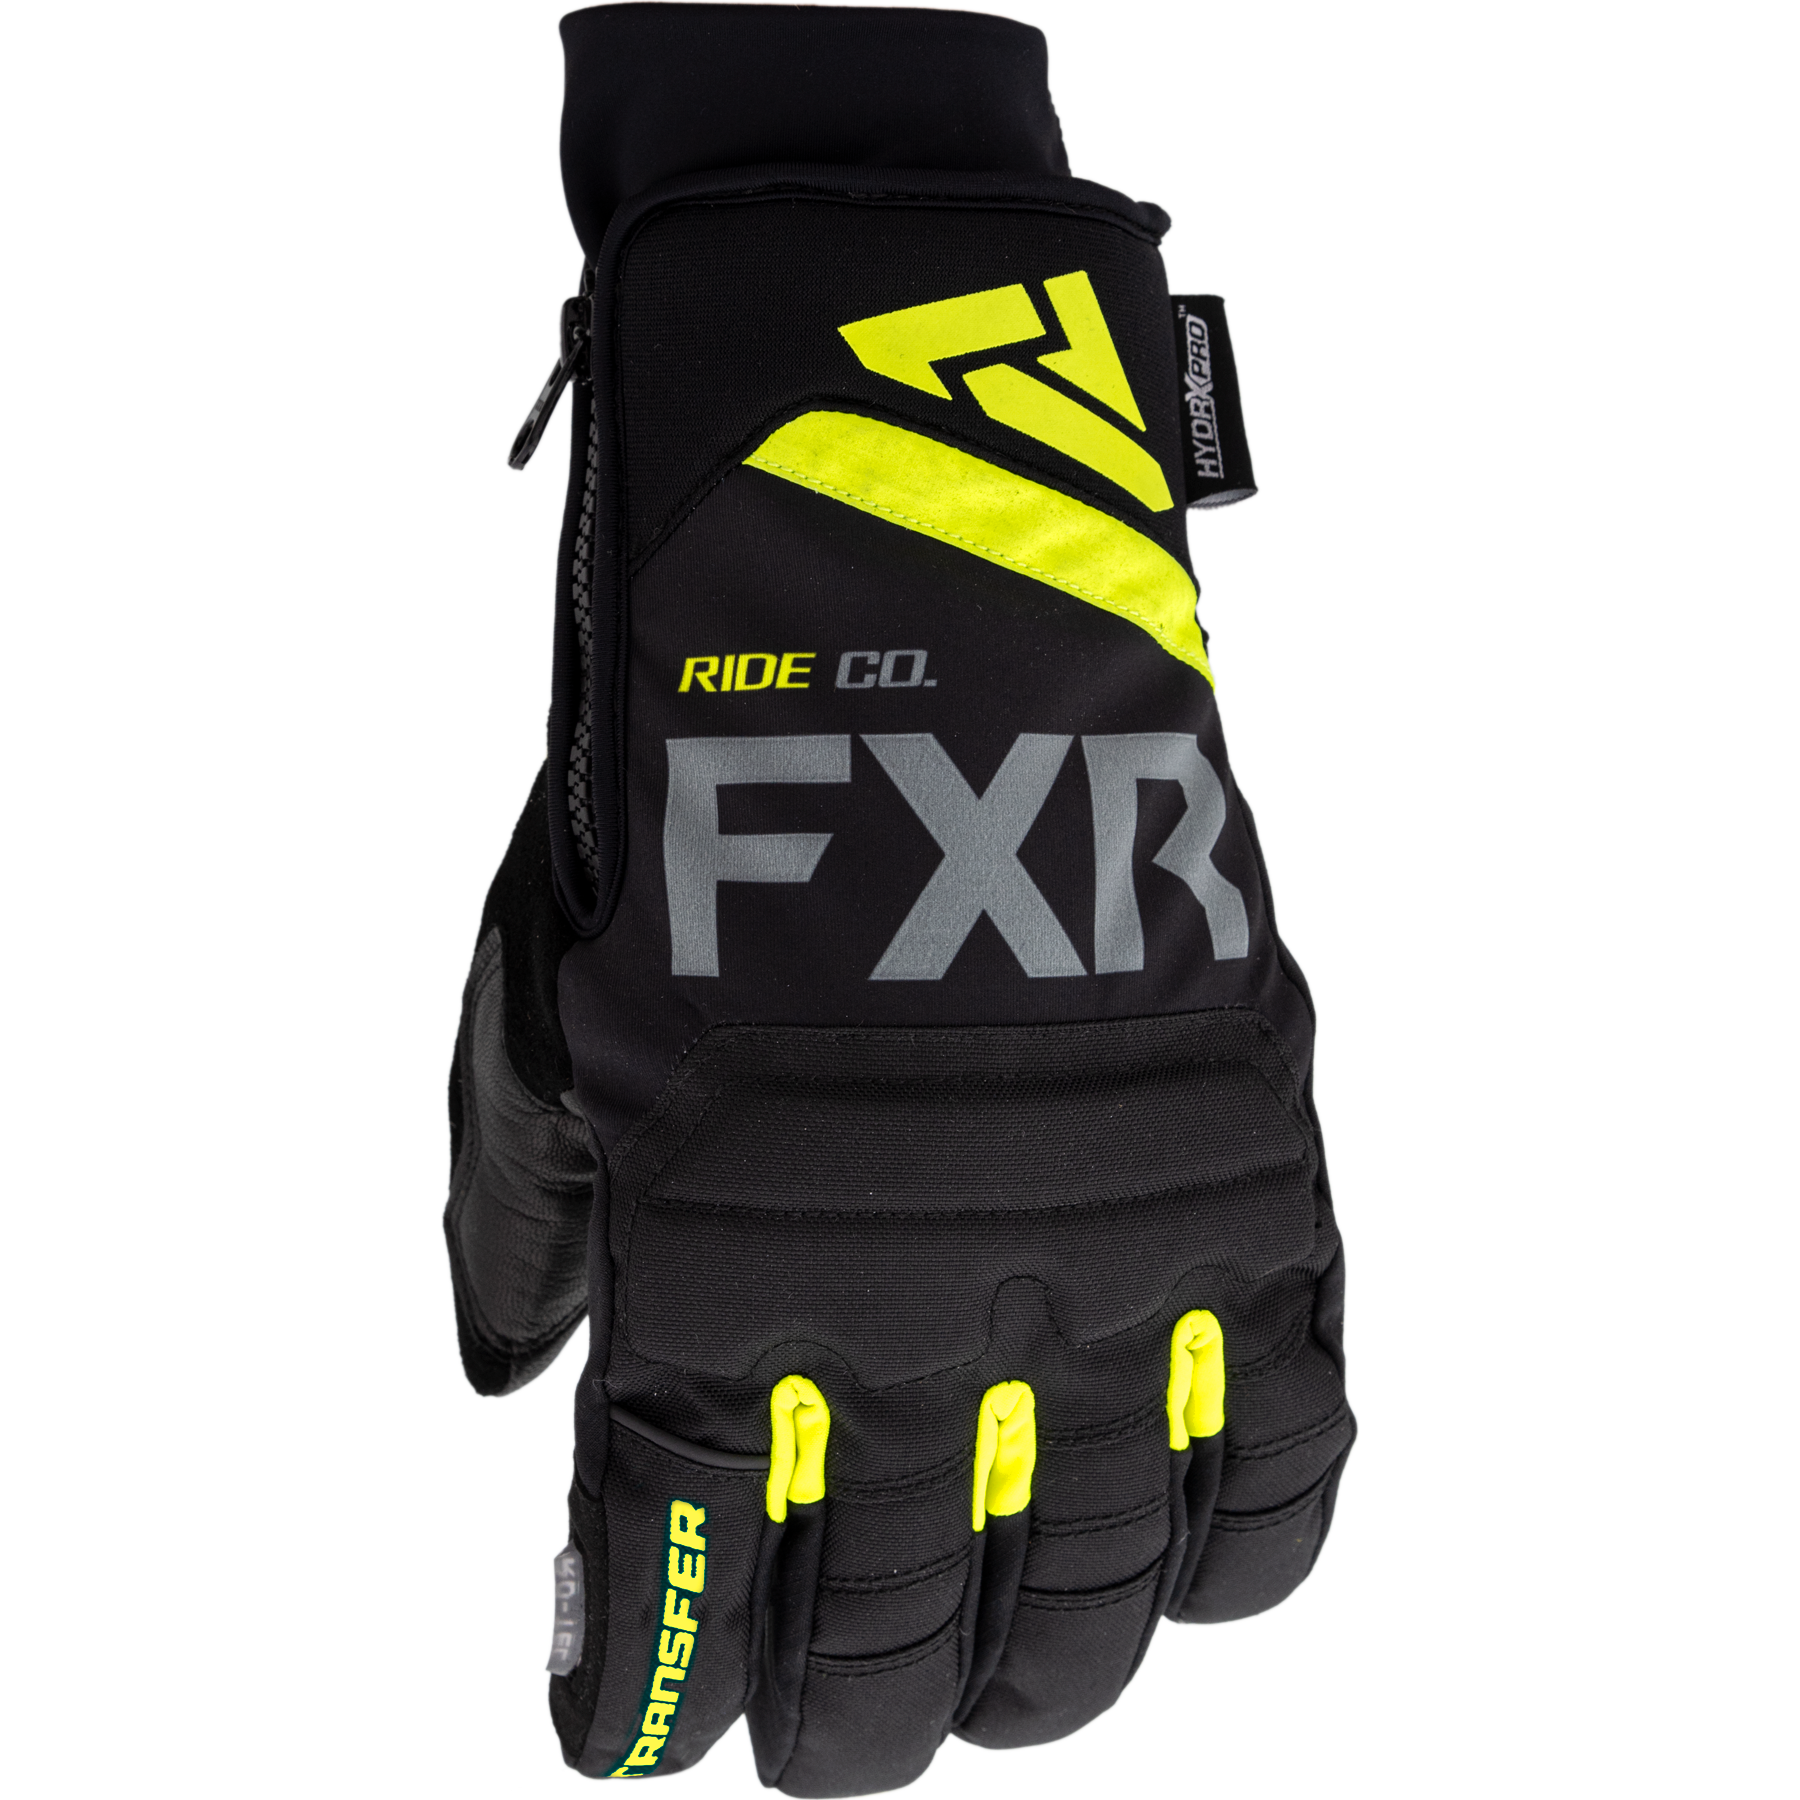 fxr racing gloves for men transfer short cuff